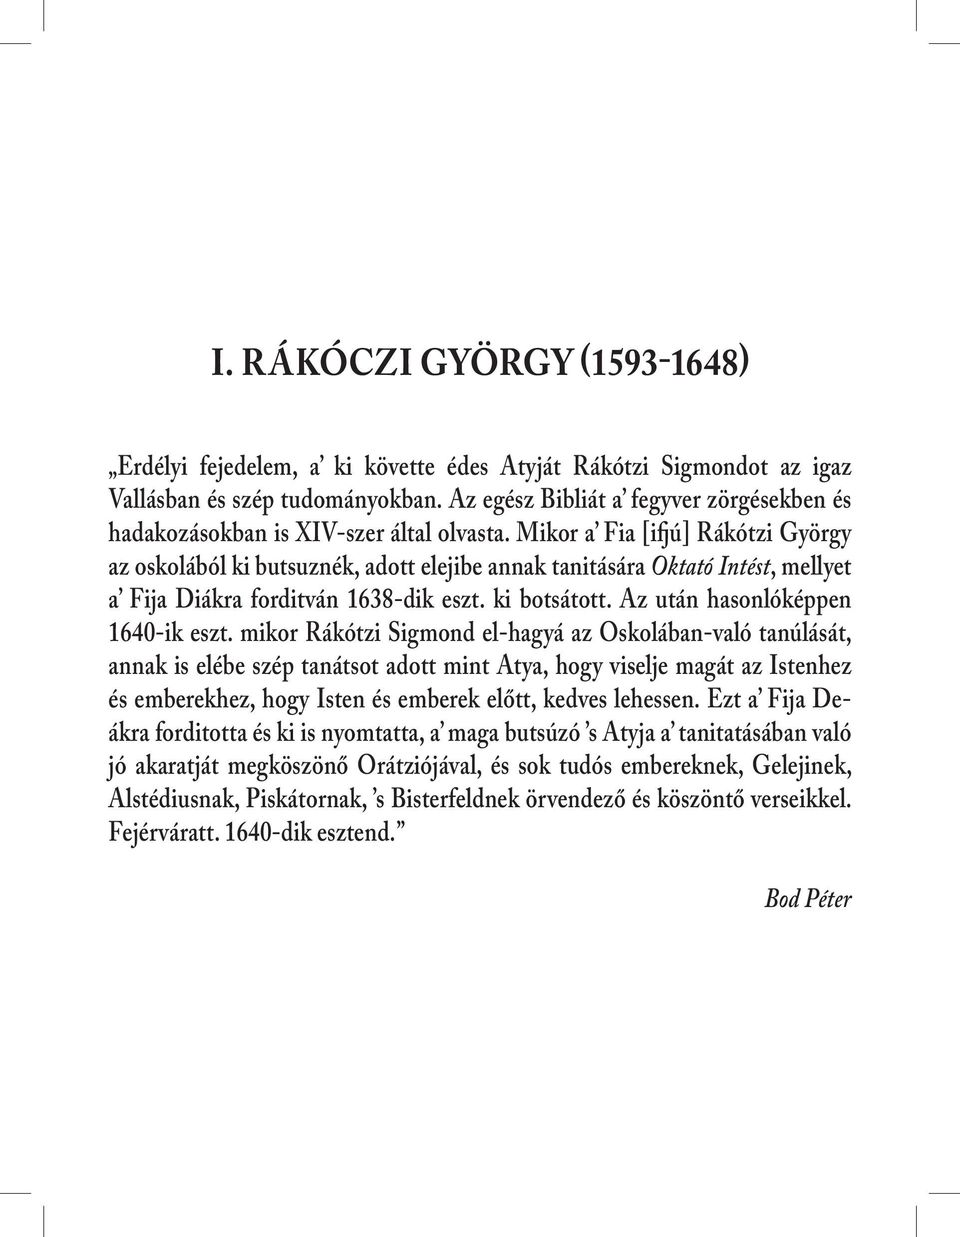 Mikor a Fia [ifjú] Rákótzi György az oskolából ki butsuznék, adott elejibe annak tanitására Oktató Intést, mellyet a Fija Diákra forditván 1638-dik eszt. ki botsátott.